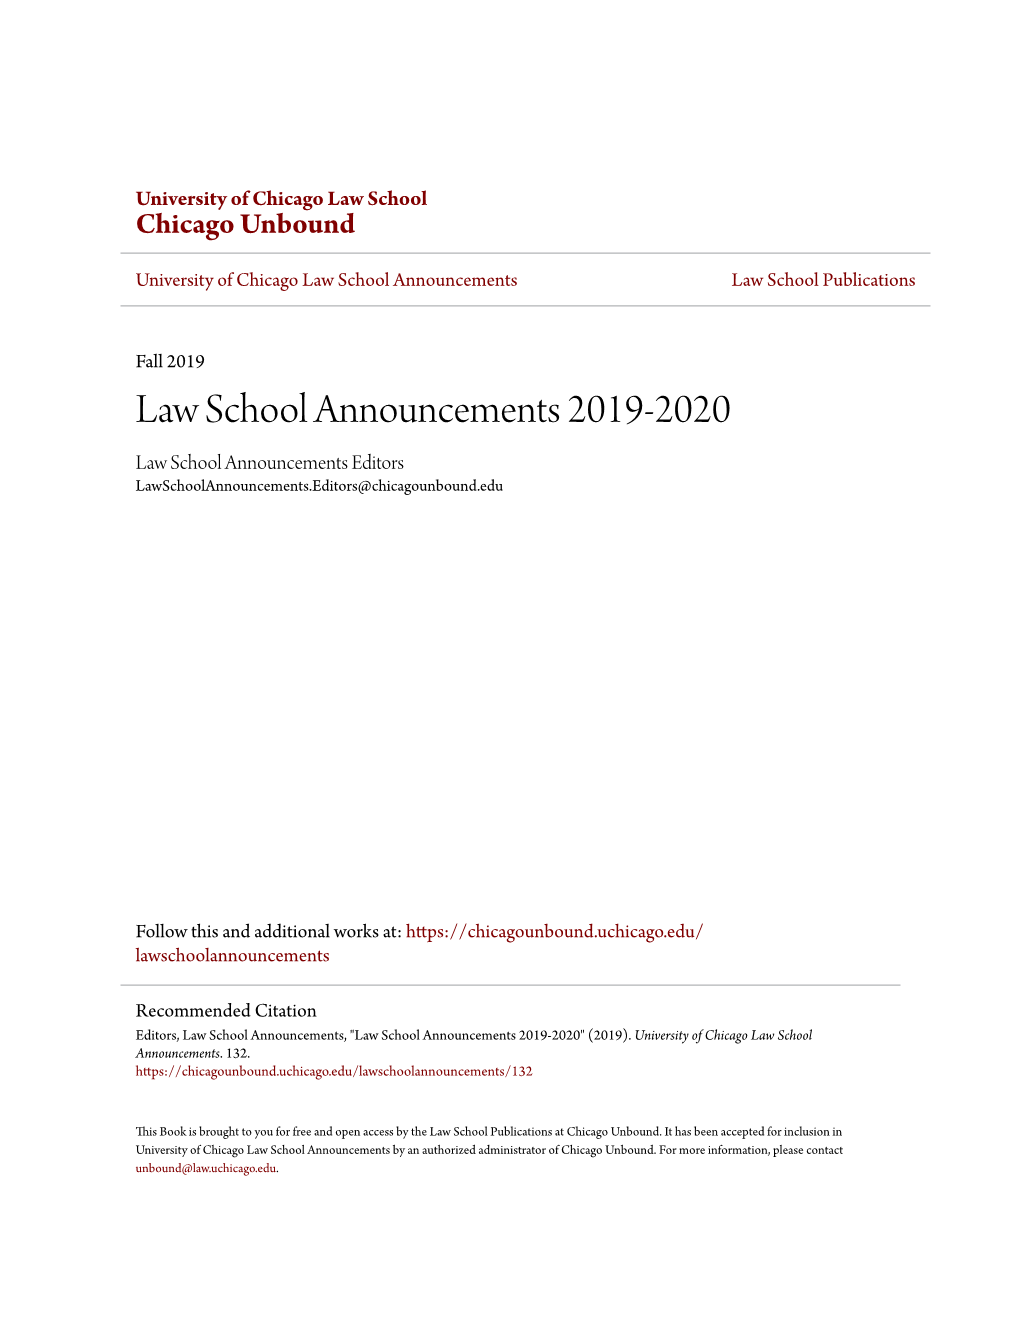 Law School Announcements 2019-2020 Law School Announcements Editors Lawschoolannouncements.Editors@Chicagounbound.Edu